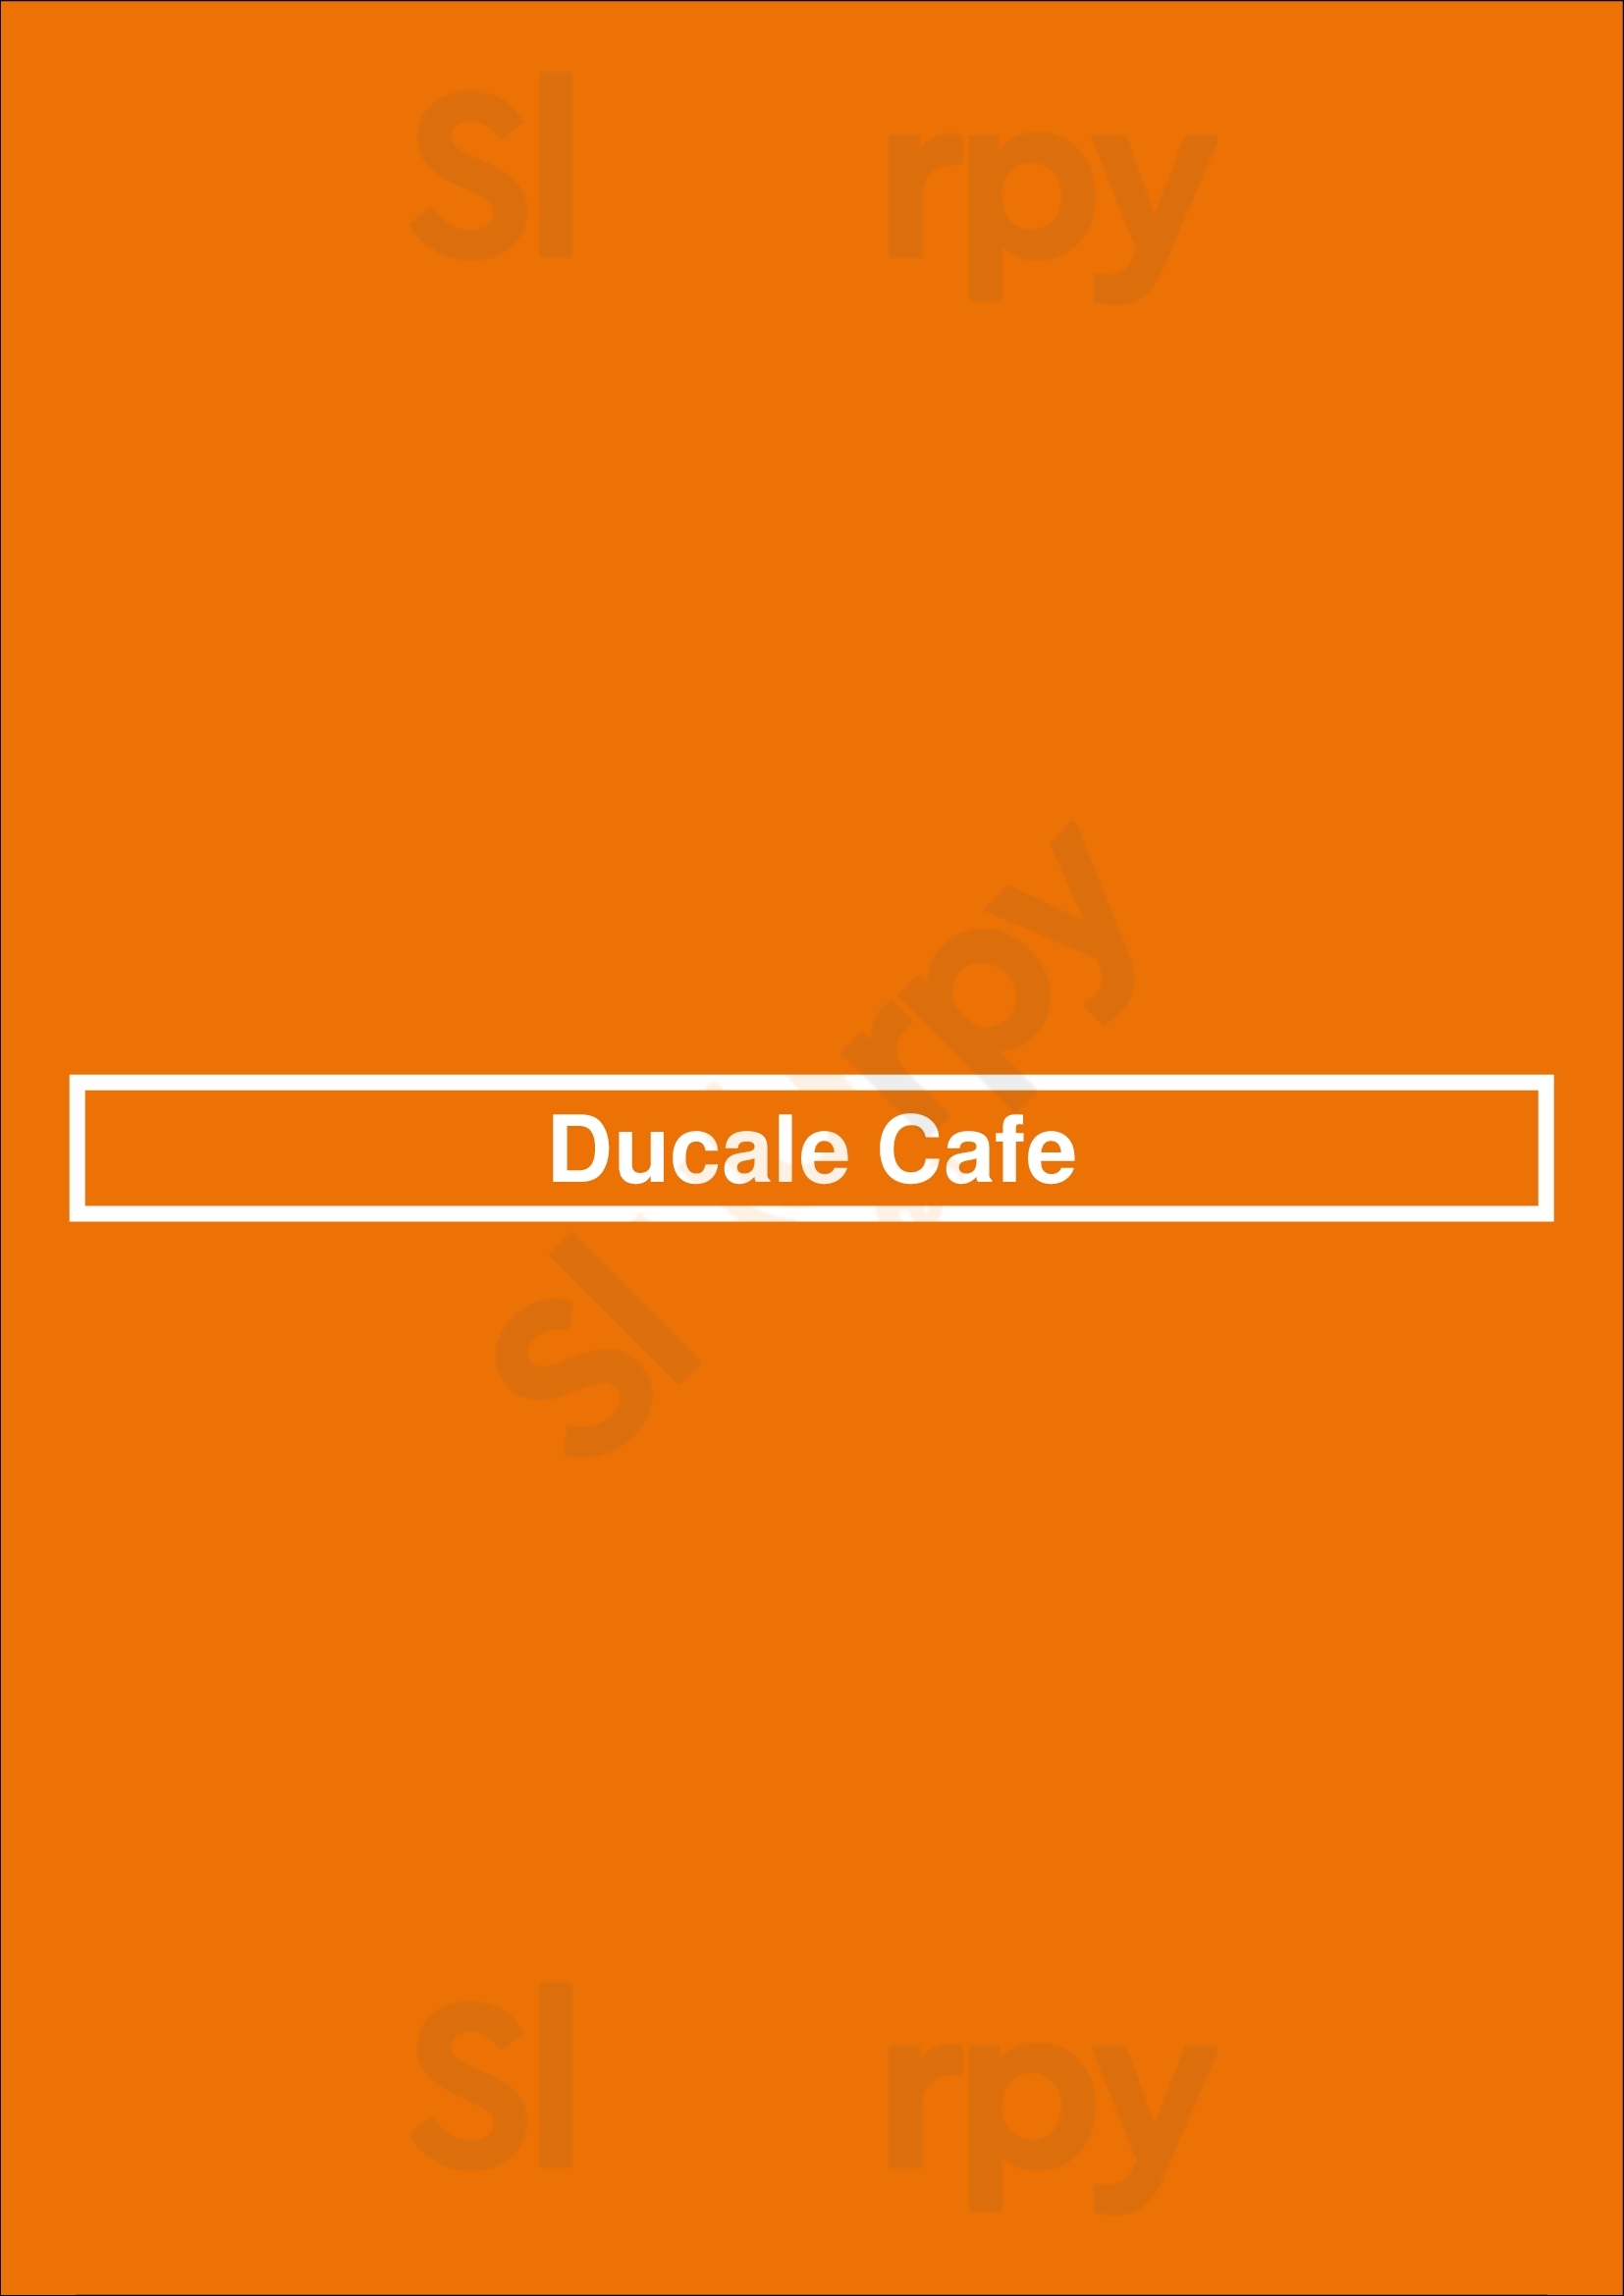 Ducale Cafe Paris Menu - 1